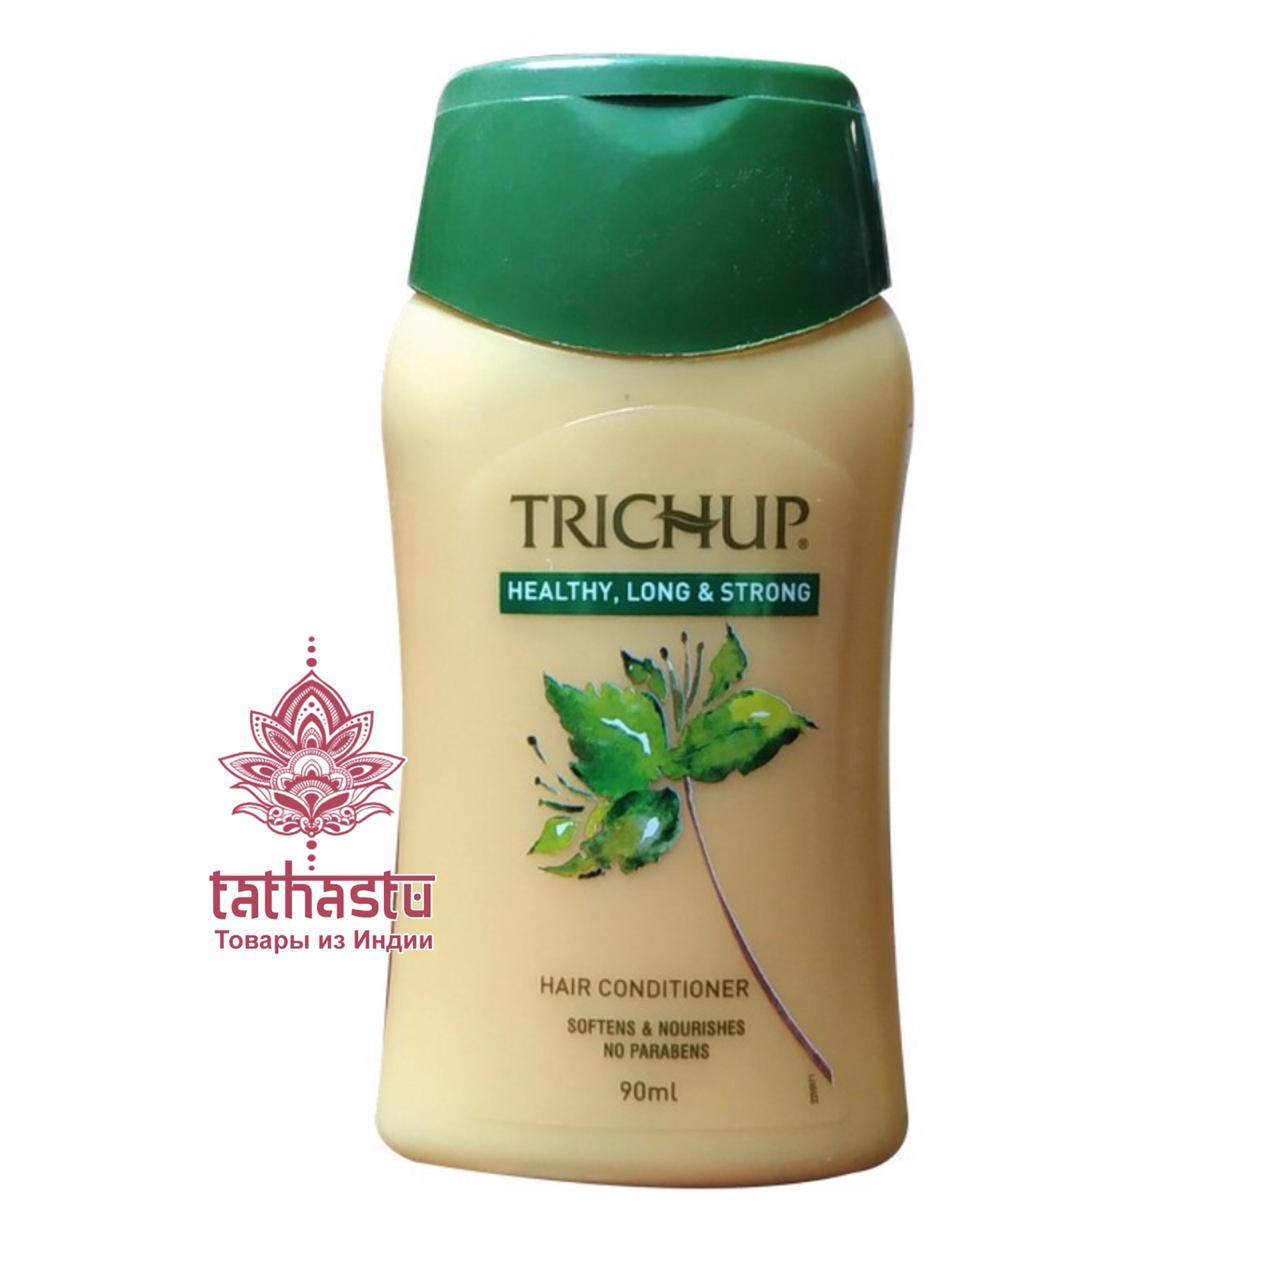 Кондиционер для волос Тричуп (Trichup Healthy, Long & Strong). Tathastu товары и индии